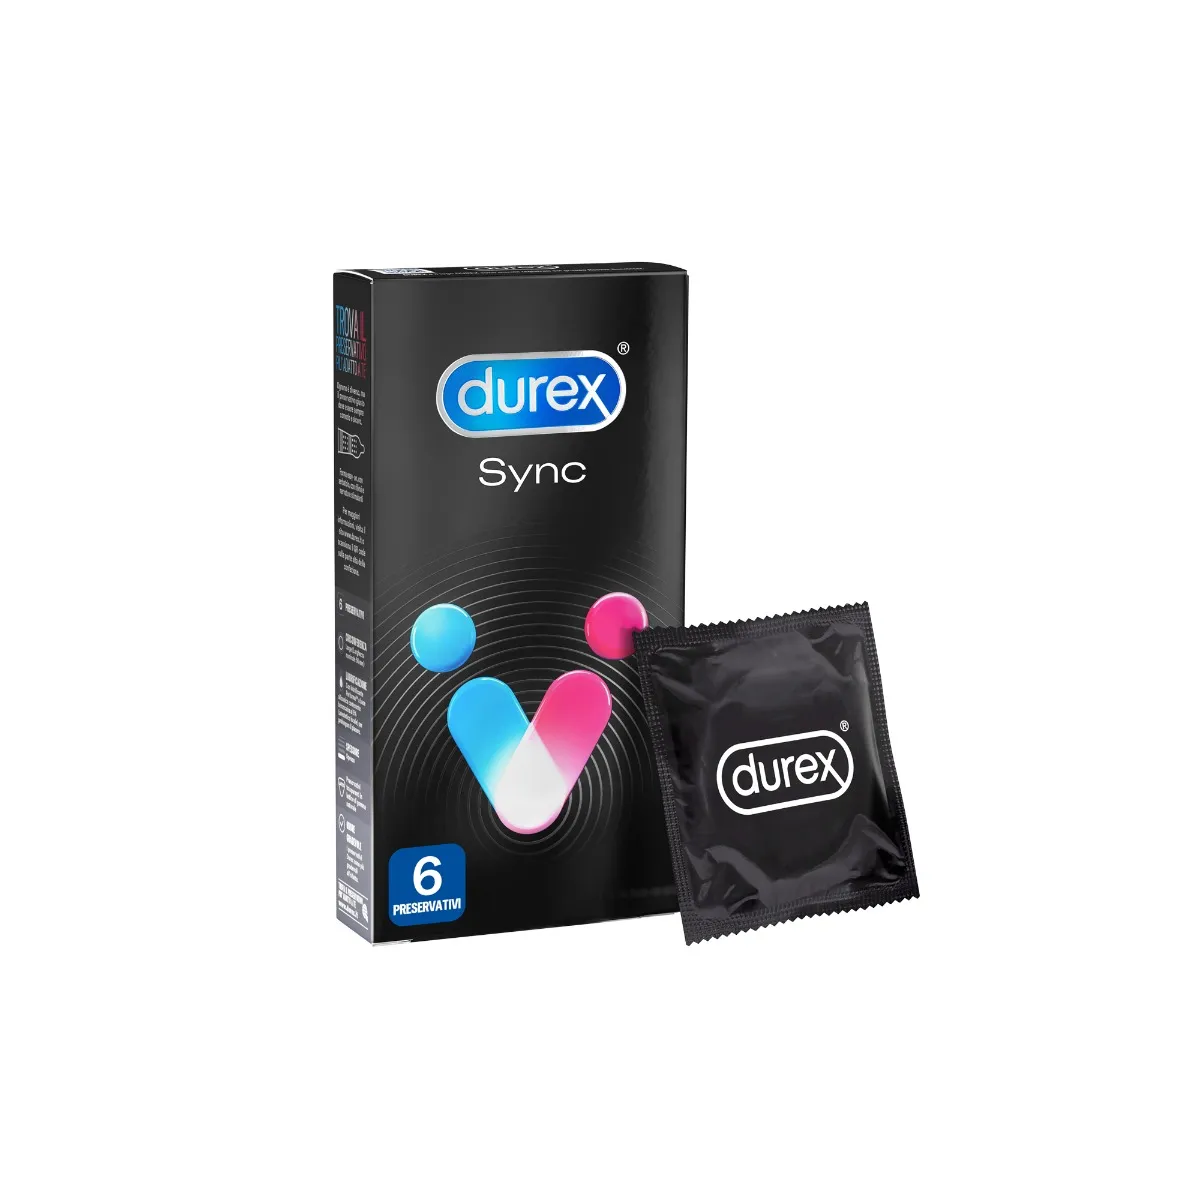 Durex Sync Preservativi Ritardanti e Stimolanti 6 Pezzi Ideato per la Coppia